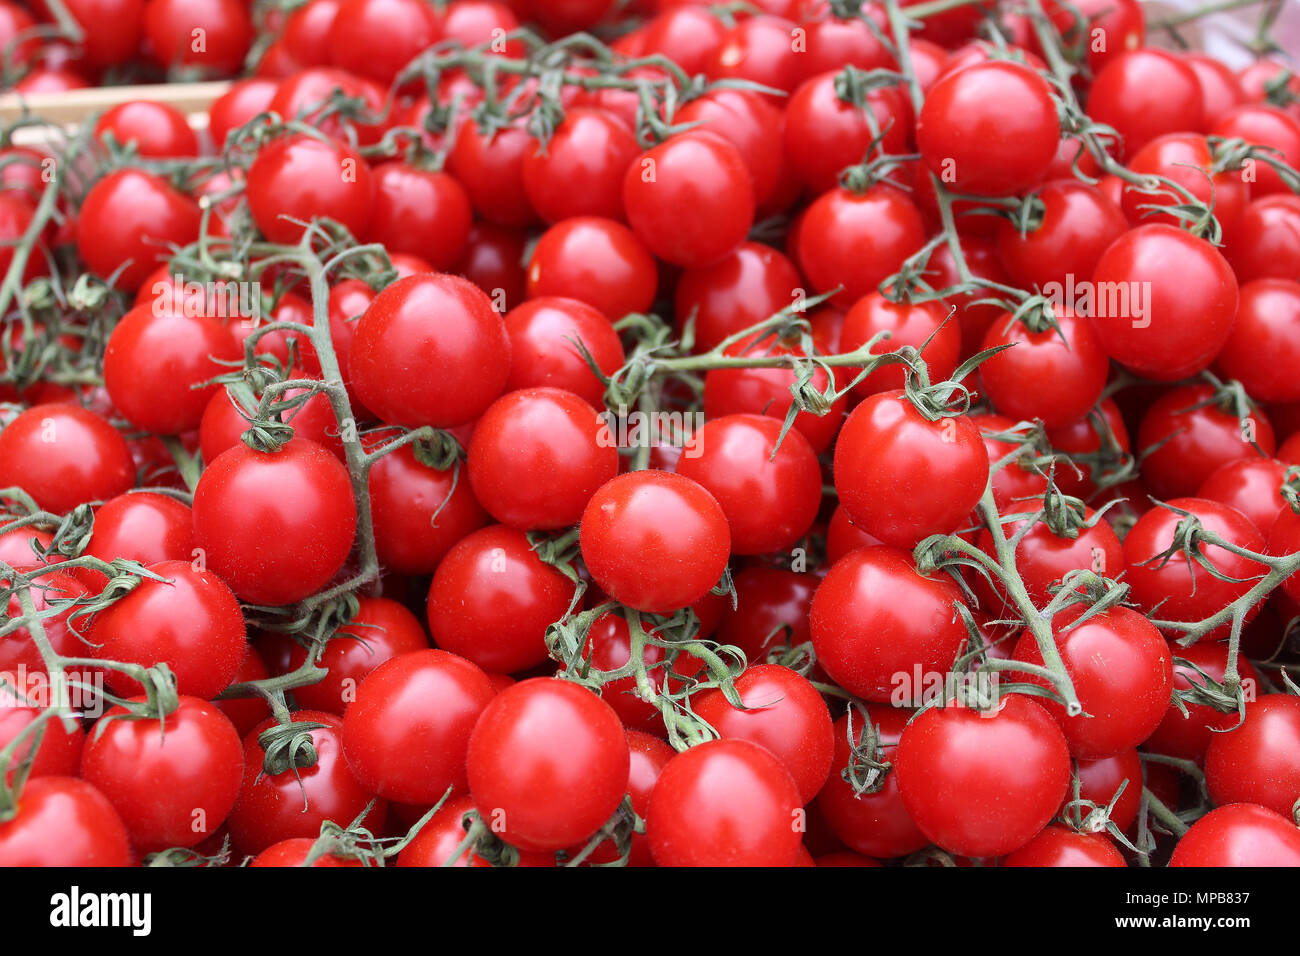 Mature pomodori rossi in un mercato - verdura fresca e sana alimentazione Foto Stock